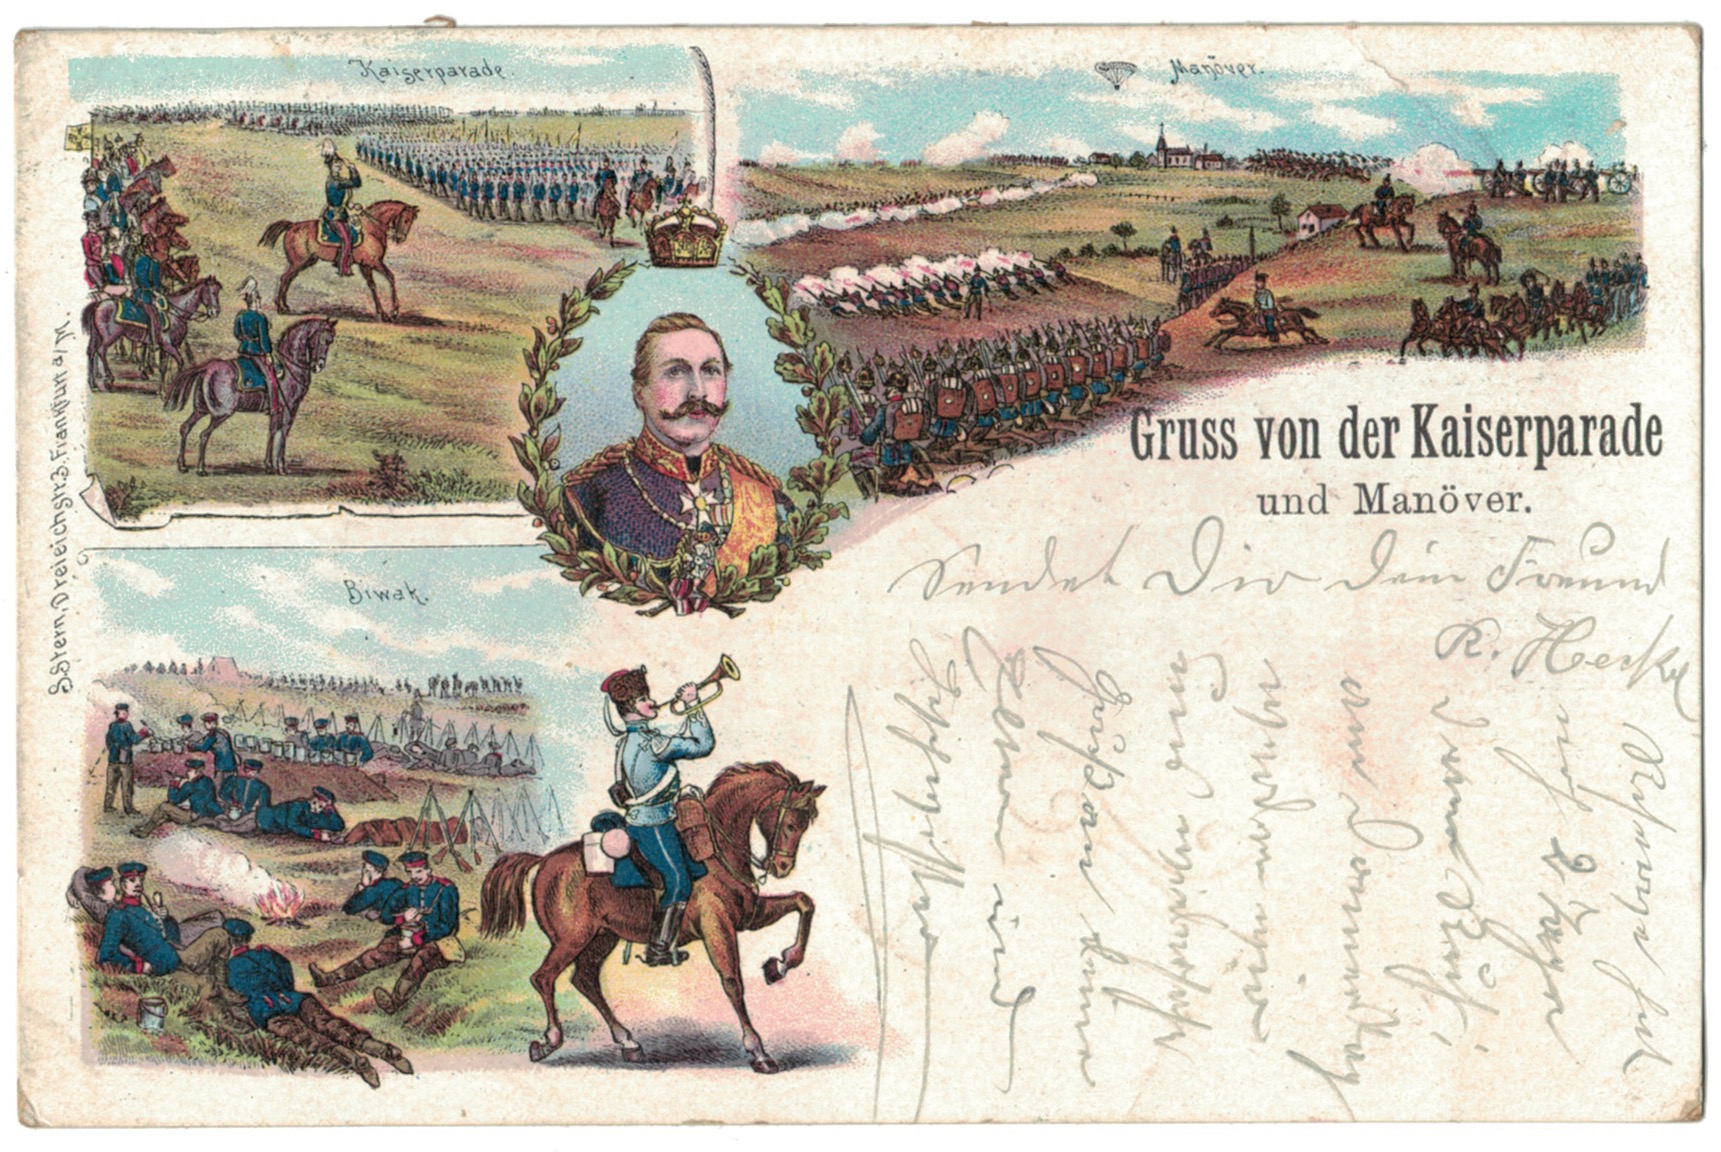 1 Carte Postale - Armée Allemande en campagne - Gruss von der Kaiserparade - Manövre - 1899